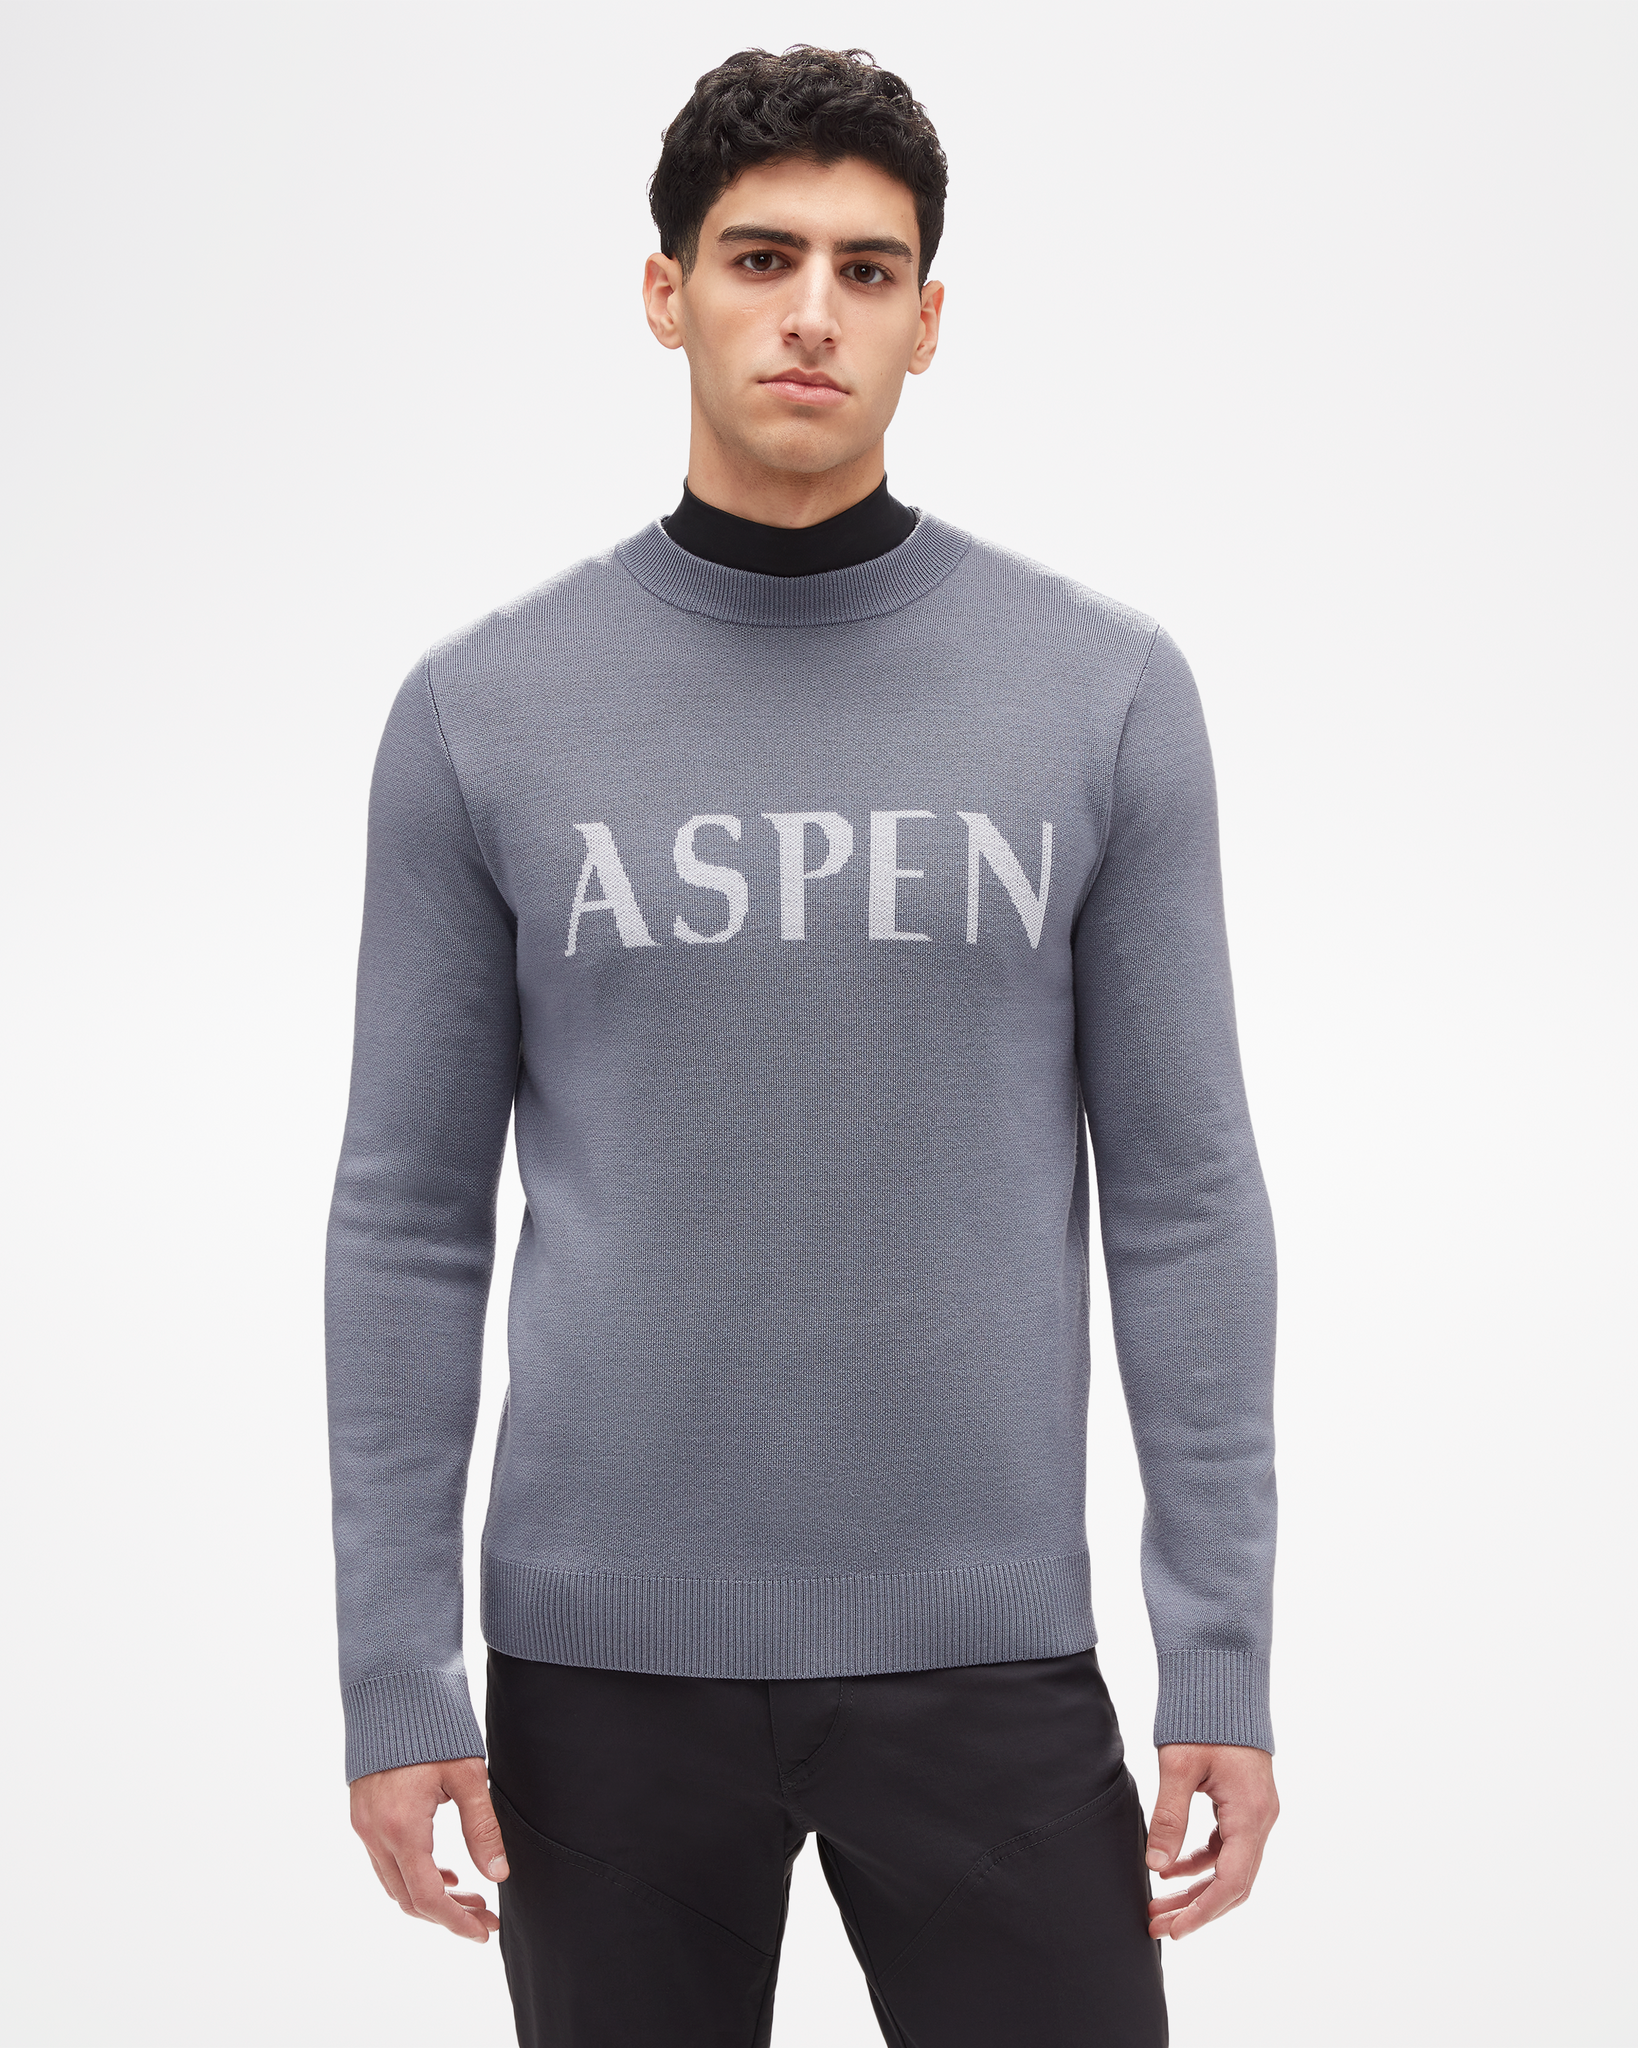 Men's Aspen Signature Sweater